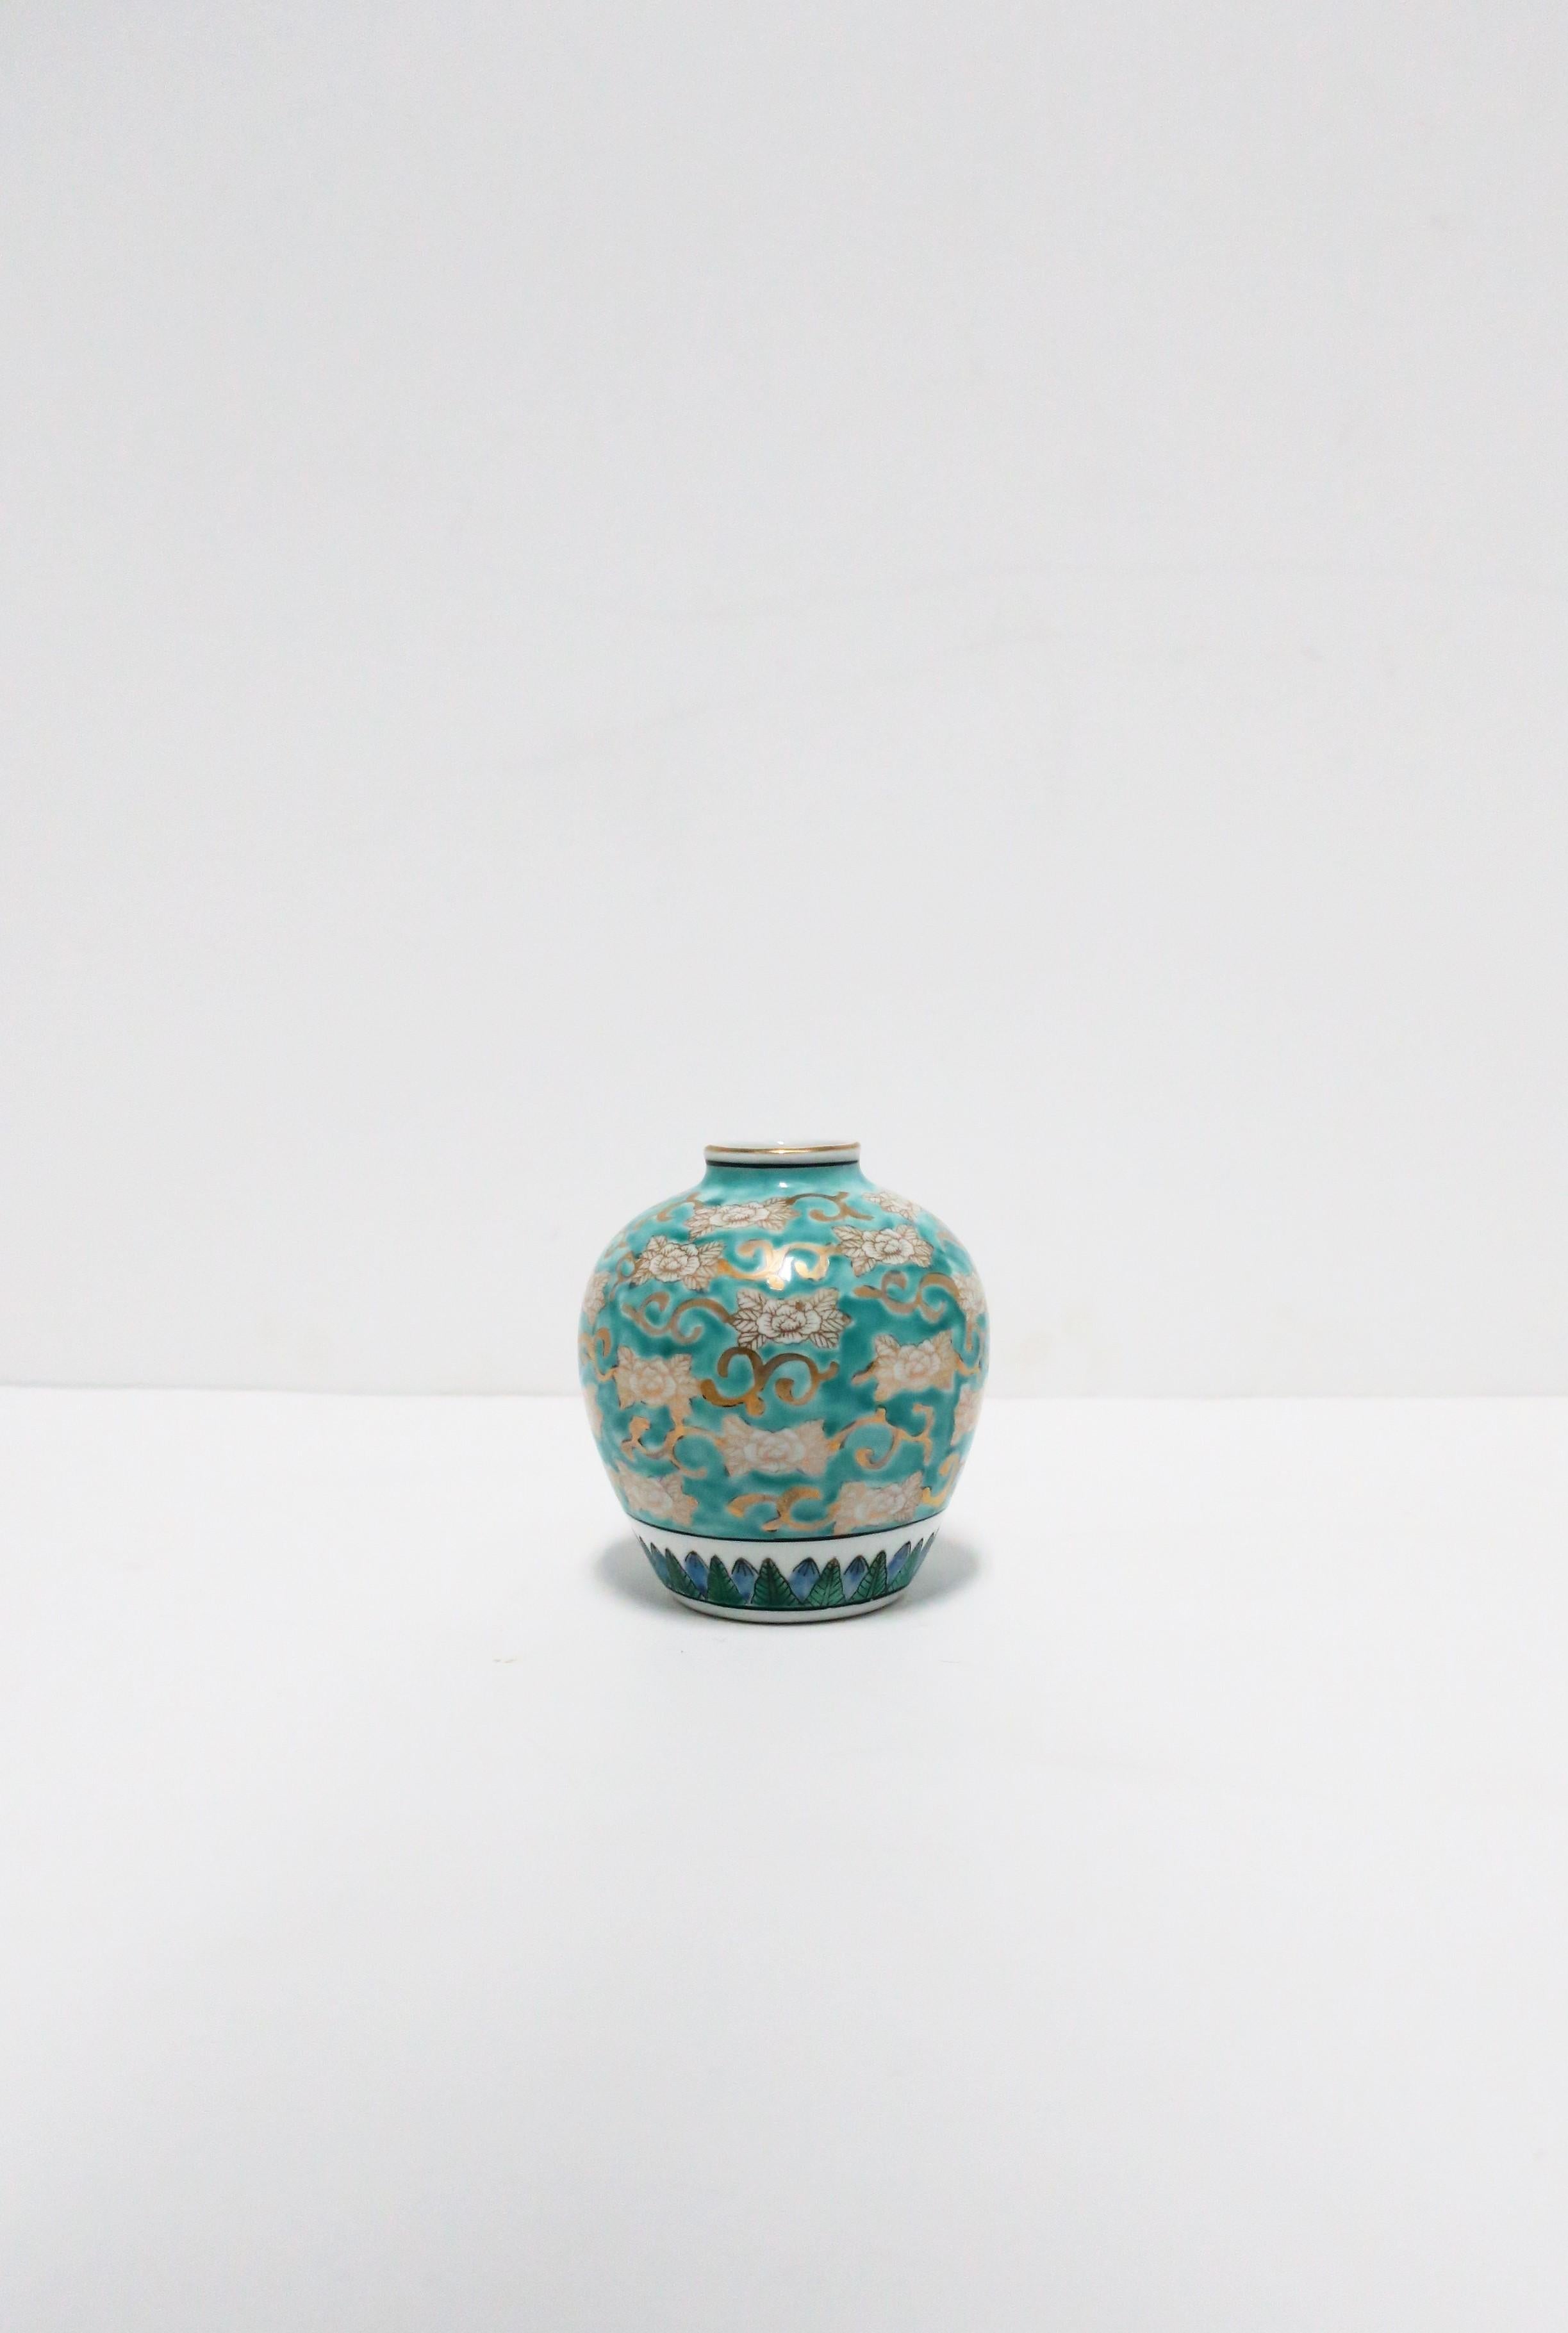 Imari Weiß Blau und Gold Porzellan Urn Ginger Jar Vase, ca. 1960er Jahre (Chinoiserie) im Angebot